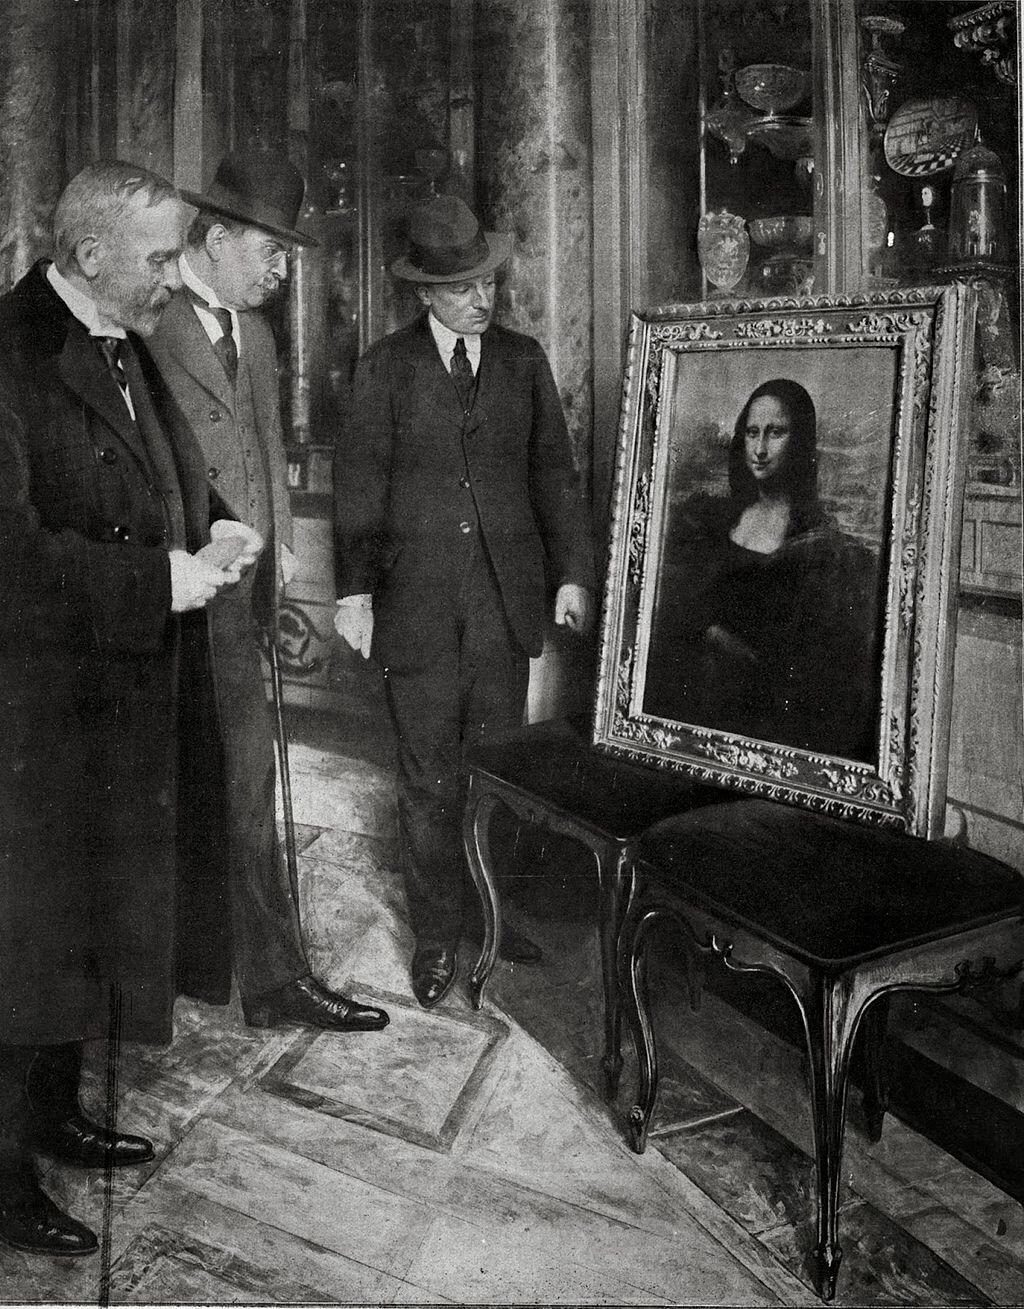 Homens admirando a Mona Lisa, encontrada dois anos após ter sido roubada do Louvre, em 1913